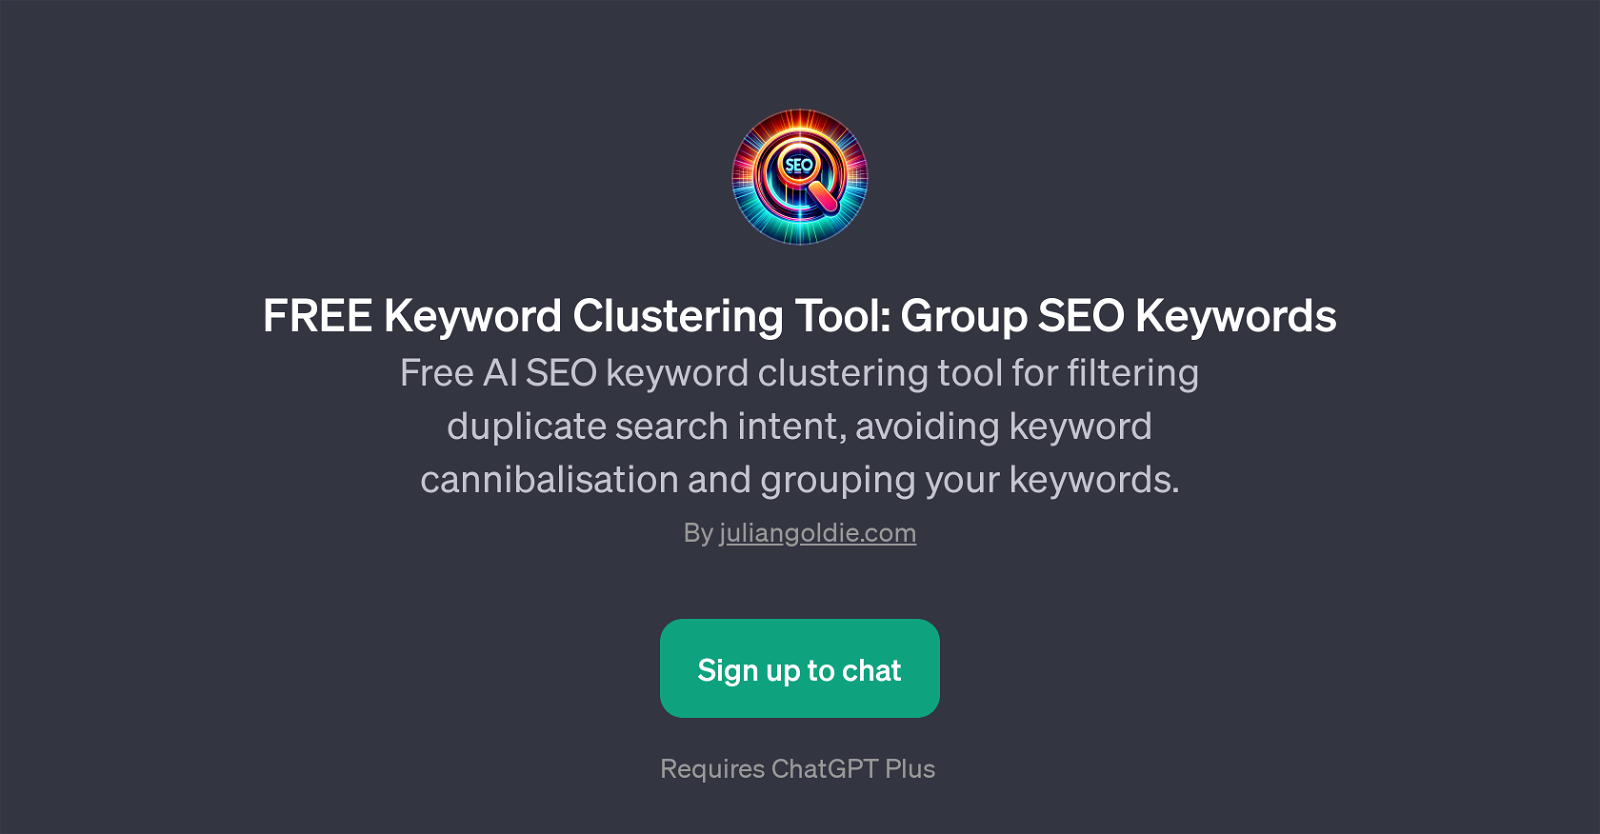 FREE Keyword Clustering Tool website